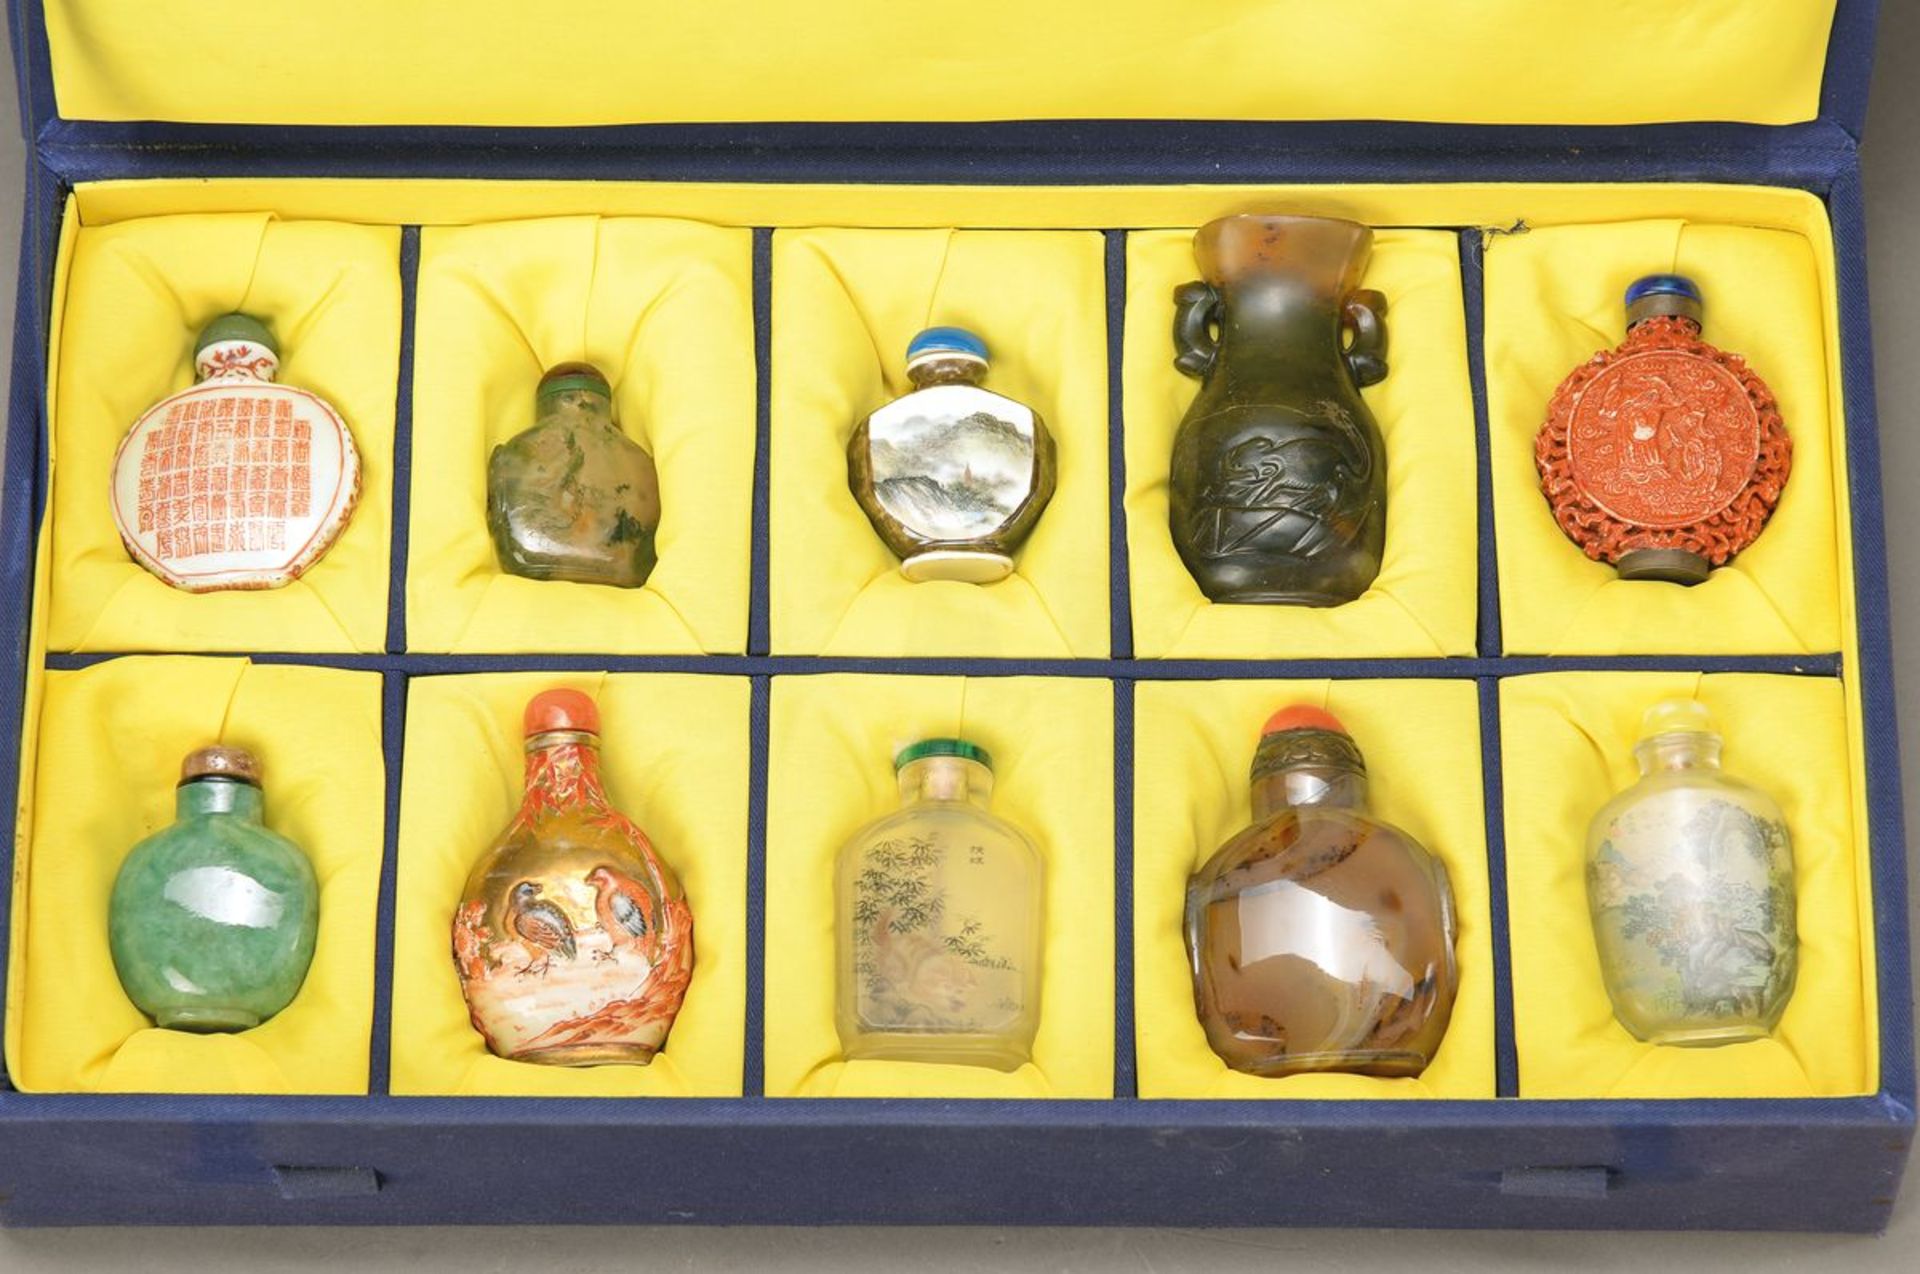 10 Snuffbottles/Vasen, China, 20. Jh., aus versch. Materialien, Glas, Porzellan, Speckstein,